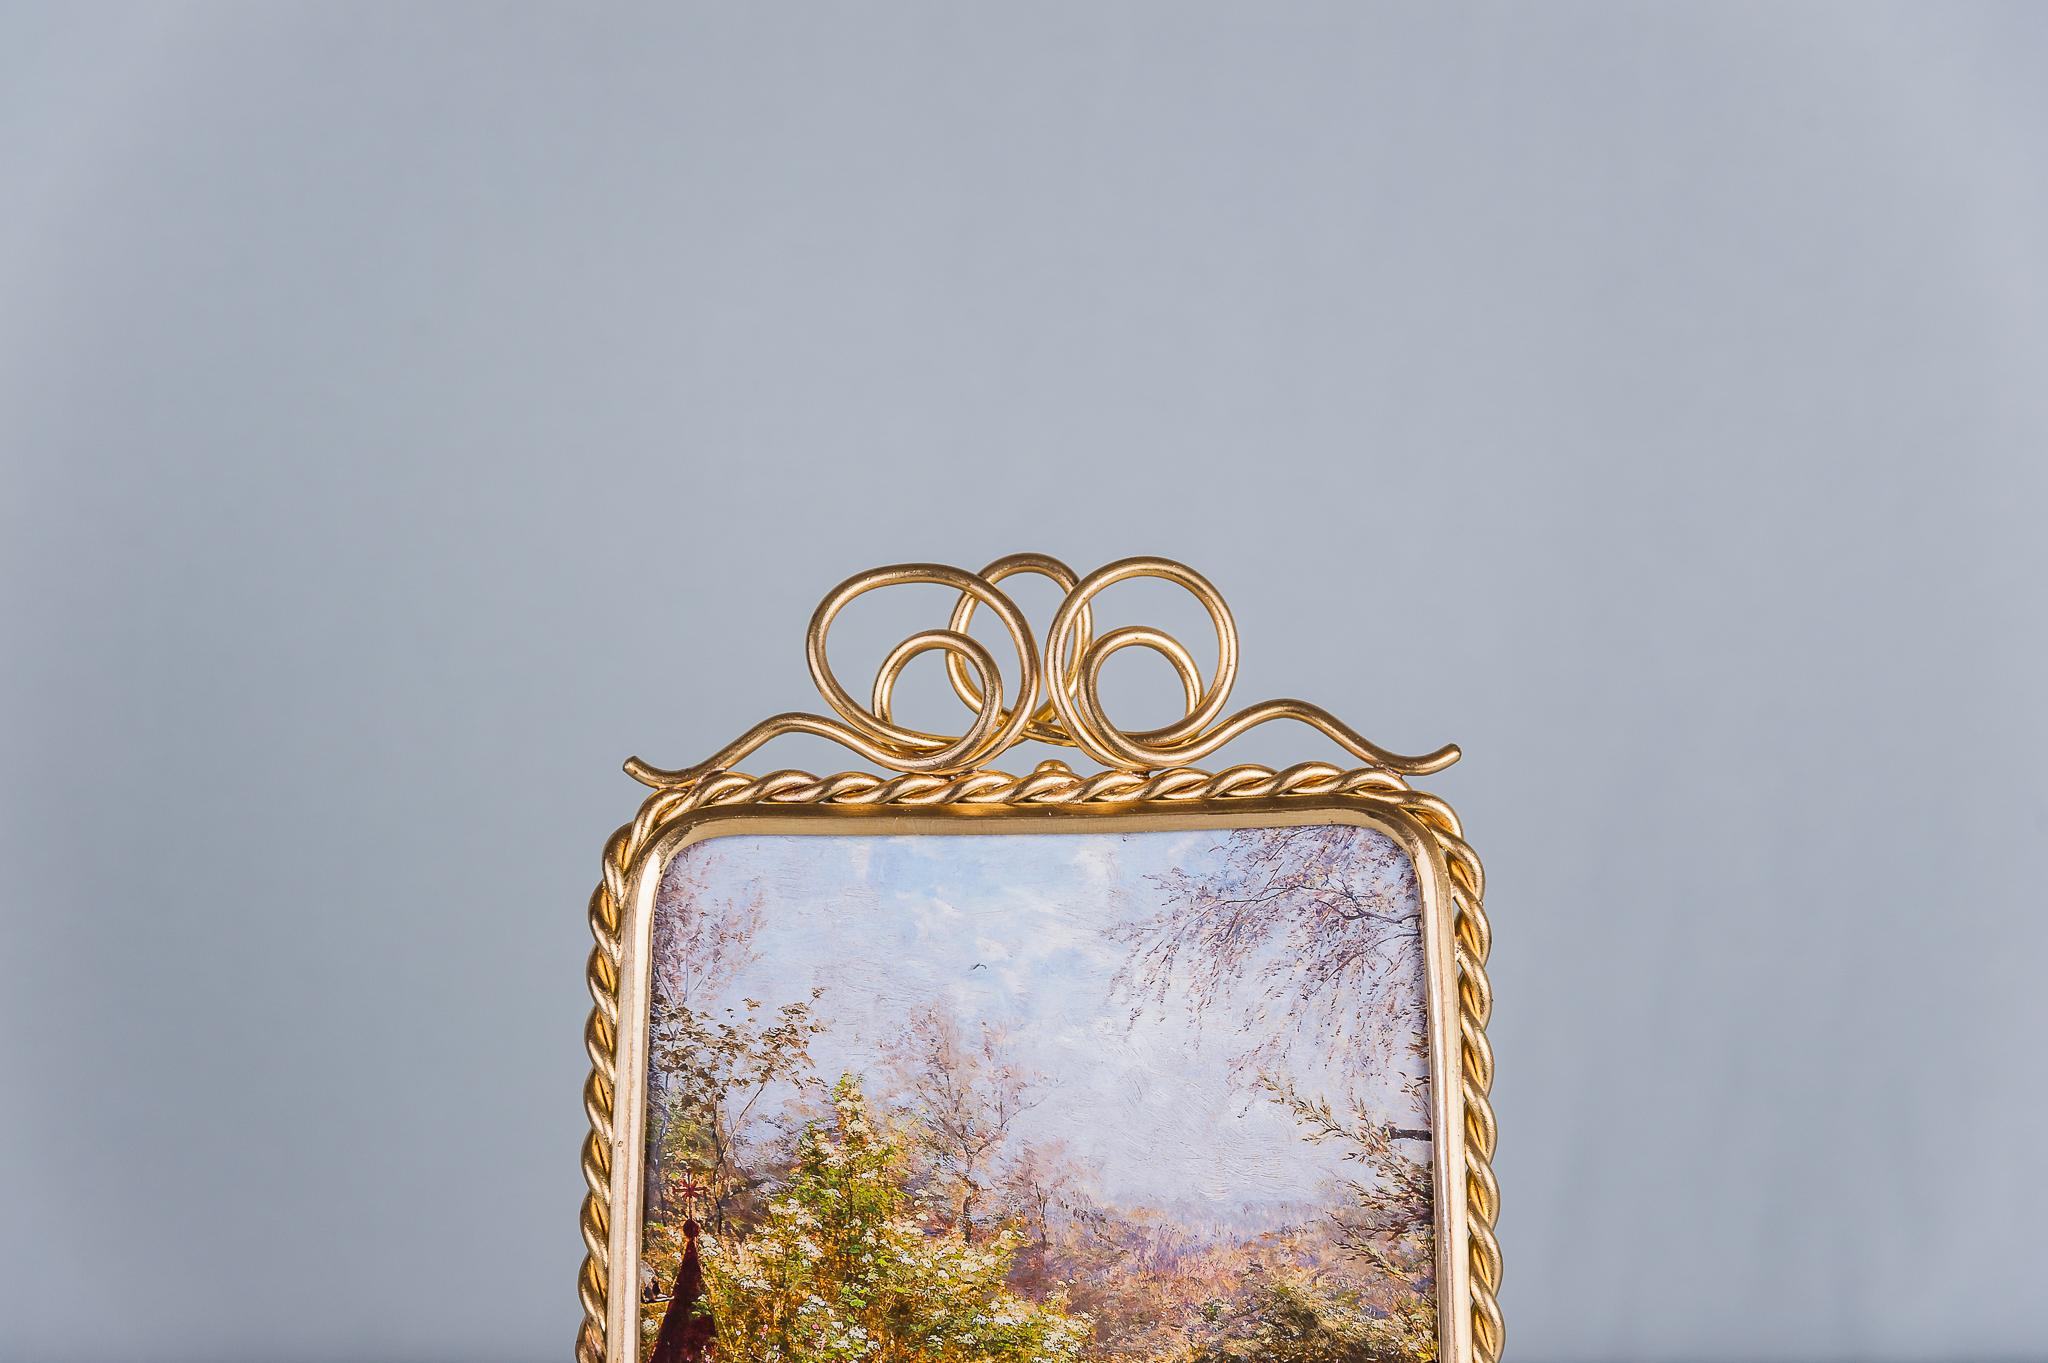 Jugendstil picture frame fire gilt, circa 1903
Original condition.
 